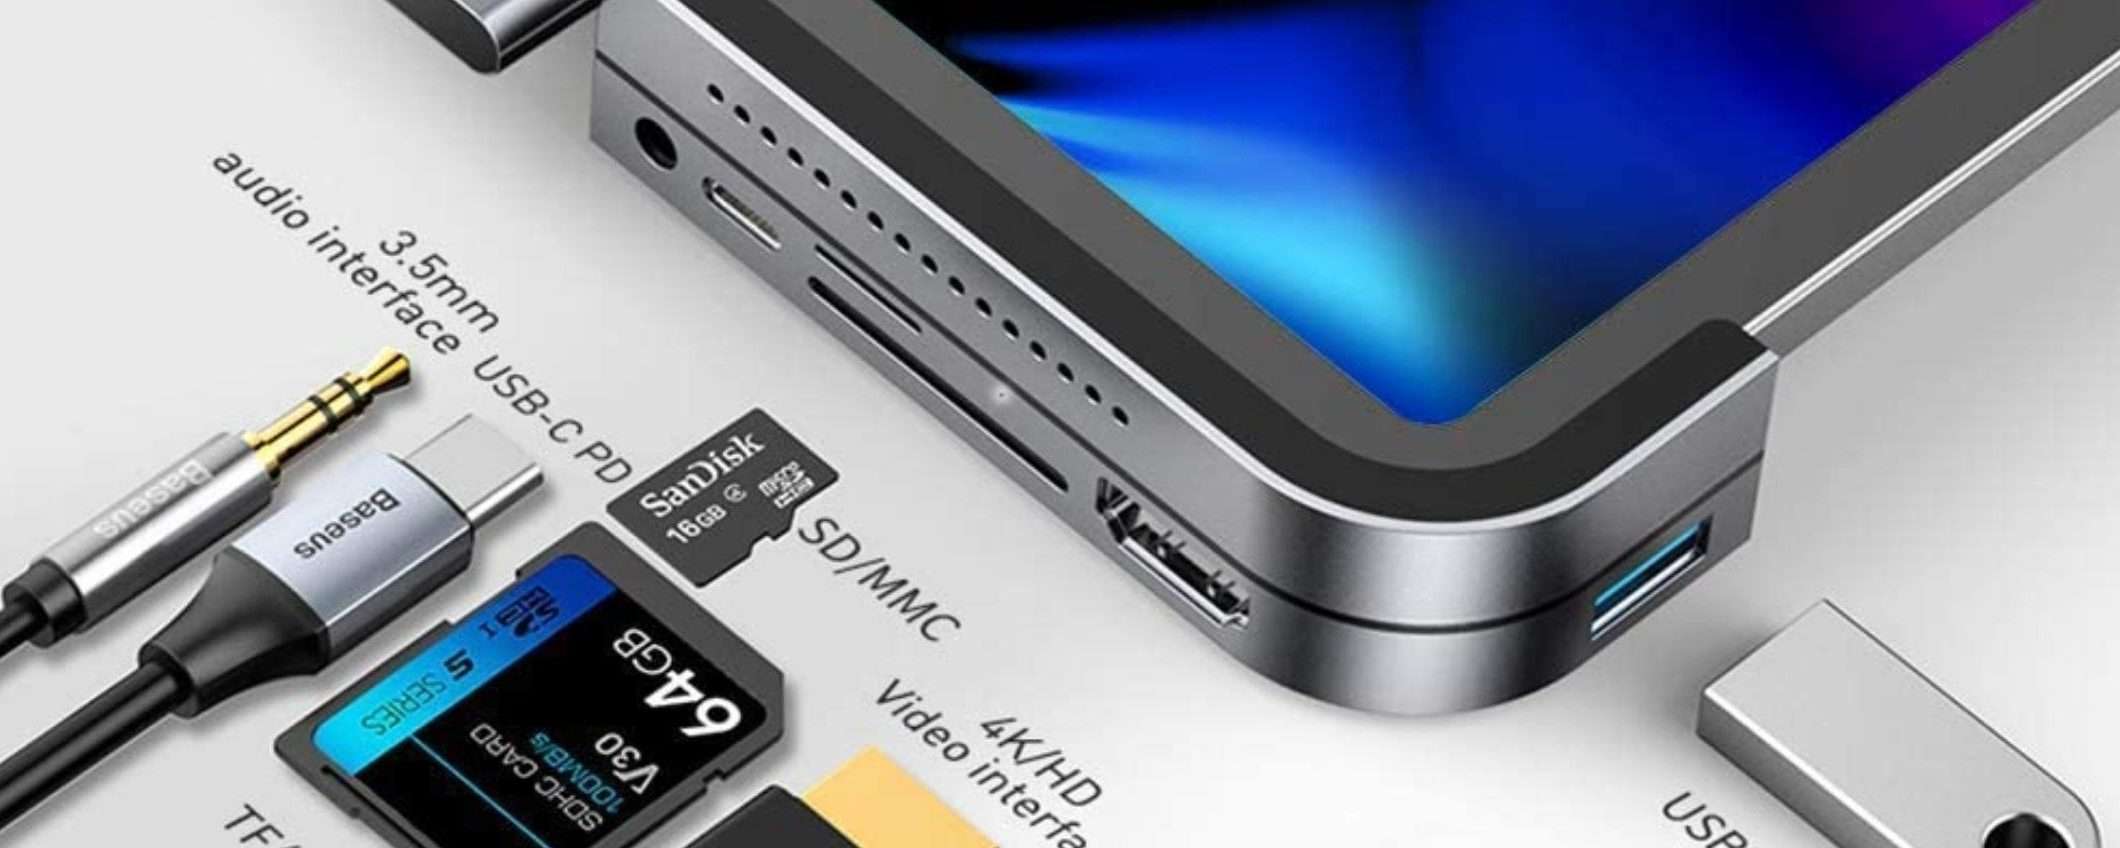 Hub USB C che scompare: 6 in 1 sui prodotti Apple indispensabile